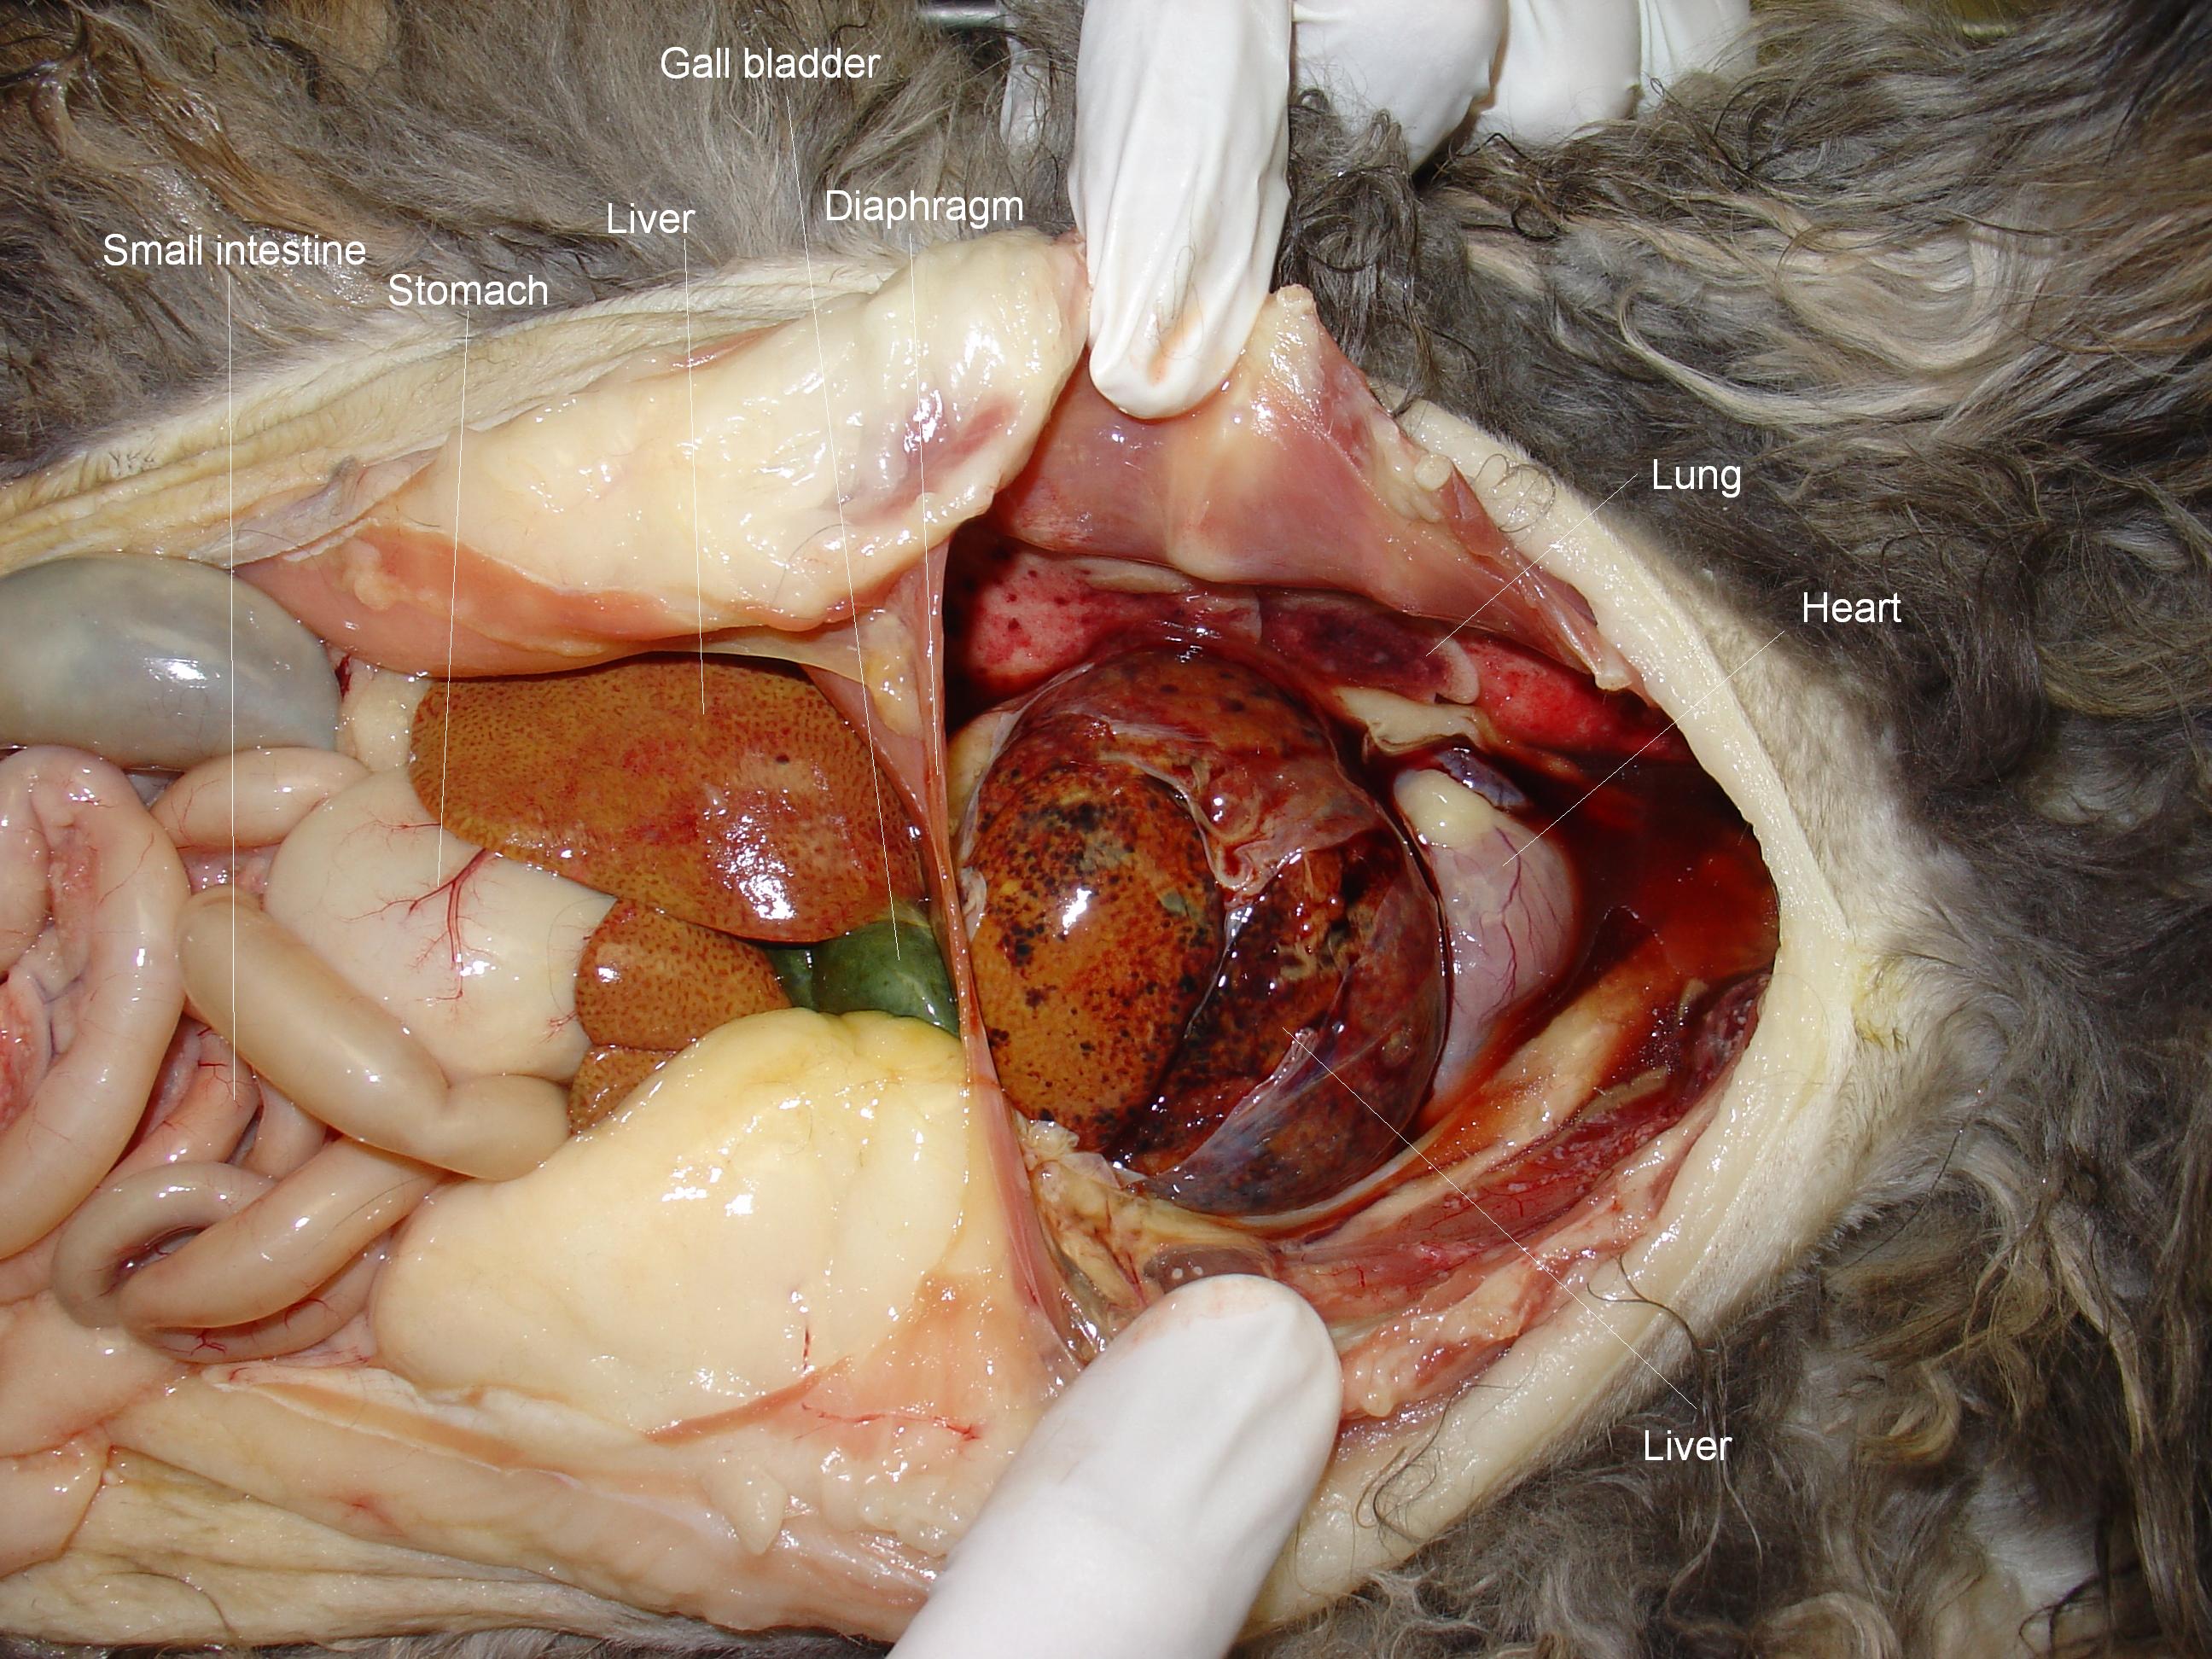 Peritoneopericardial diaphragmatic hernia